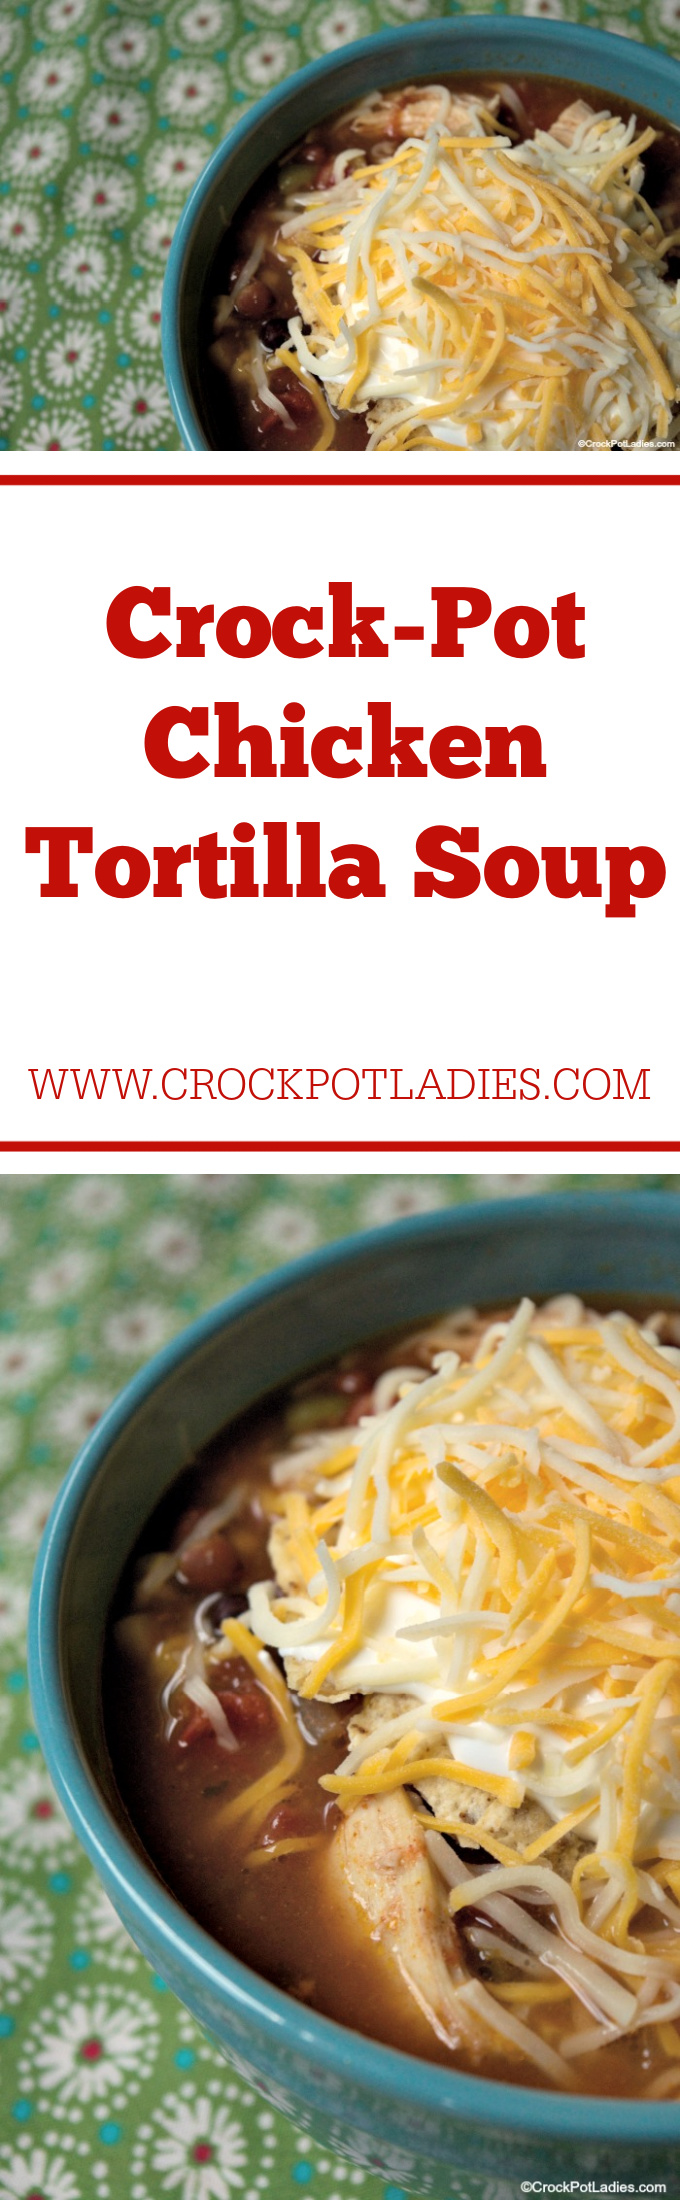 Crock-Pot Chicken Tortilla Soup